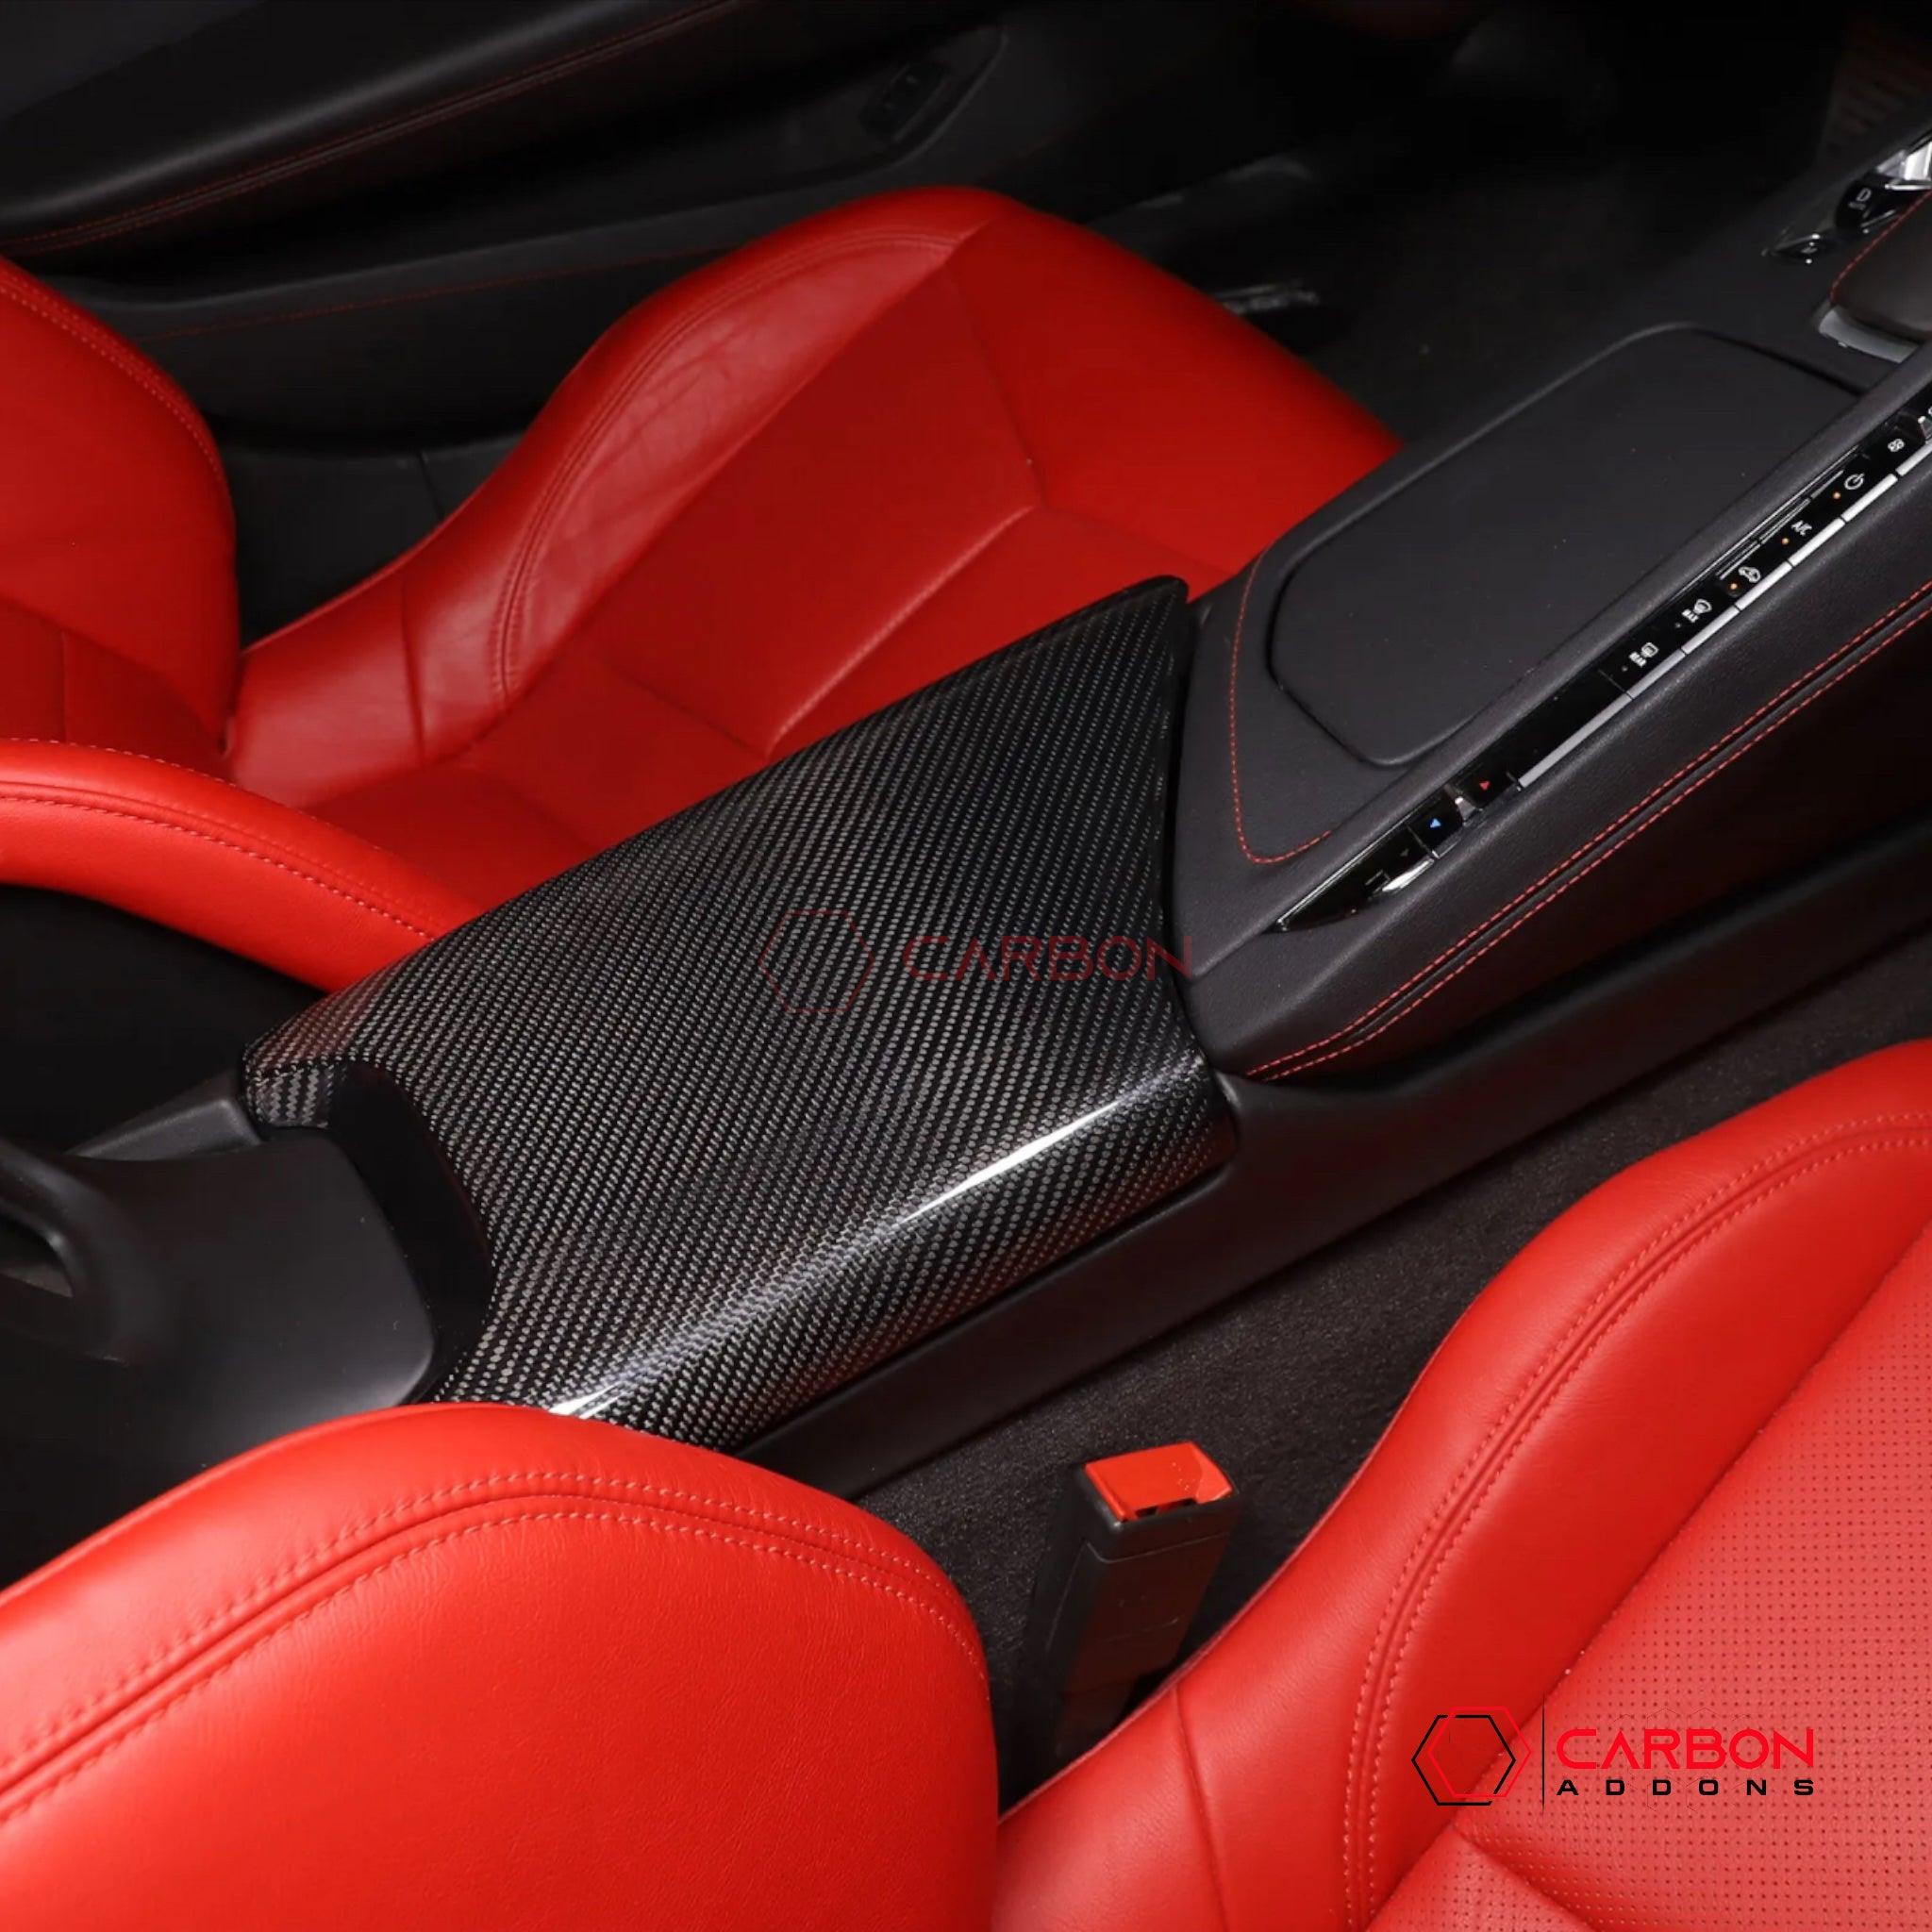 C8 Corvette Carbon Fiber Center Console Lid Arm Rest Cover - carbonaddons Carbon Fiber Parts, Accessories, Upgrades, Mods